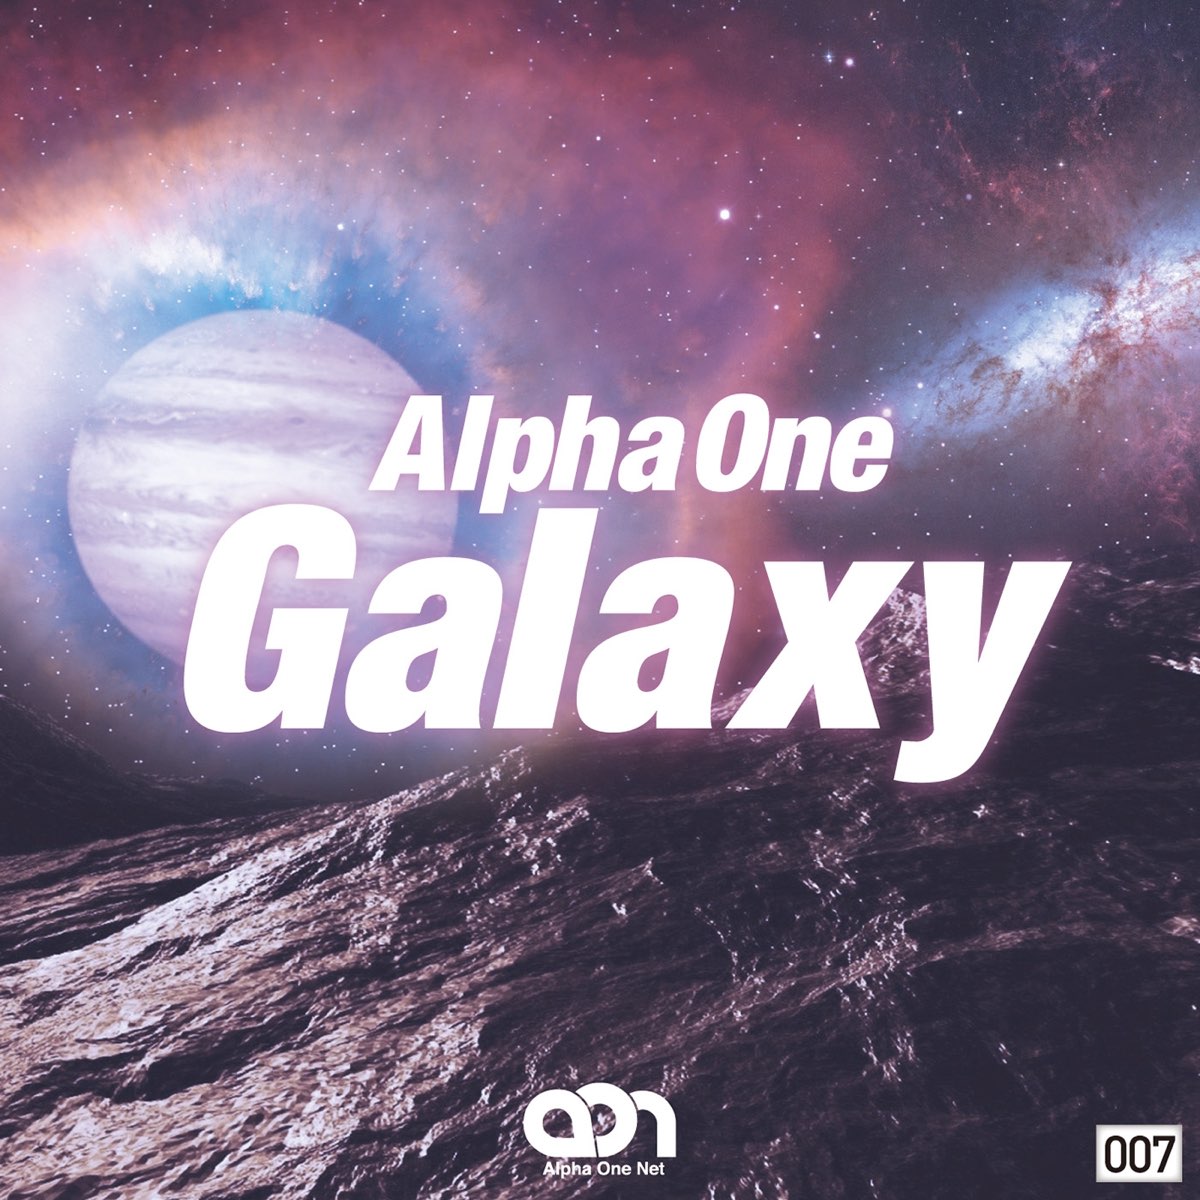 Alpha sound. Альфа one. Музыка Galaxy. Песня Галактика. First Alpha.